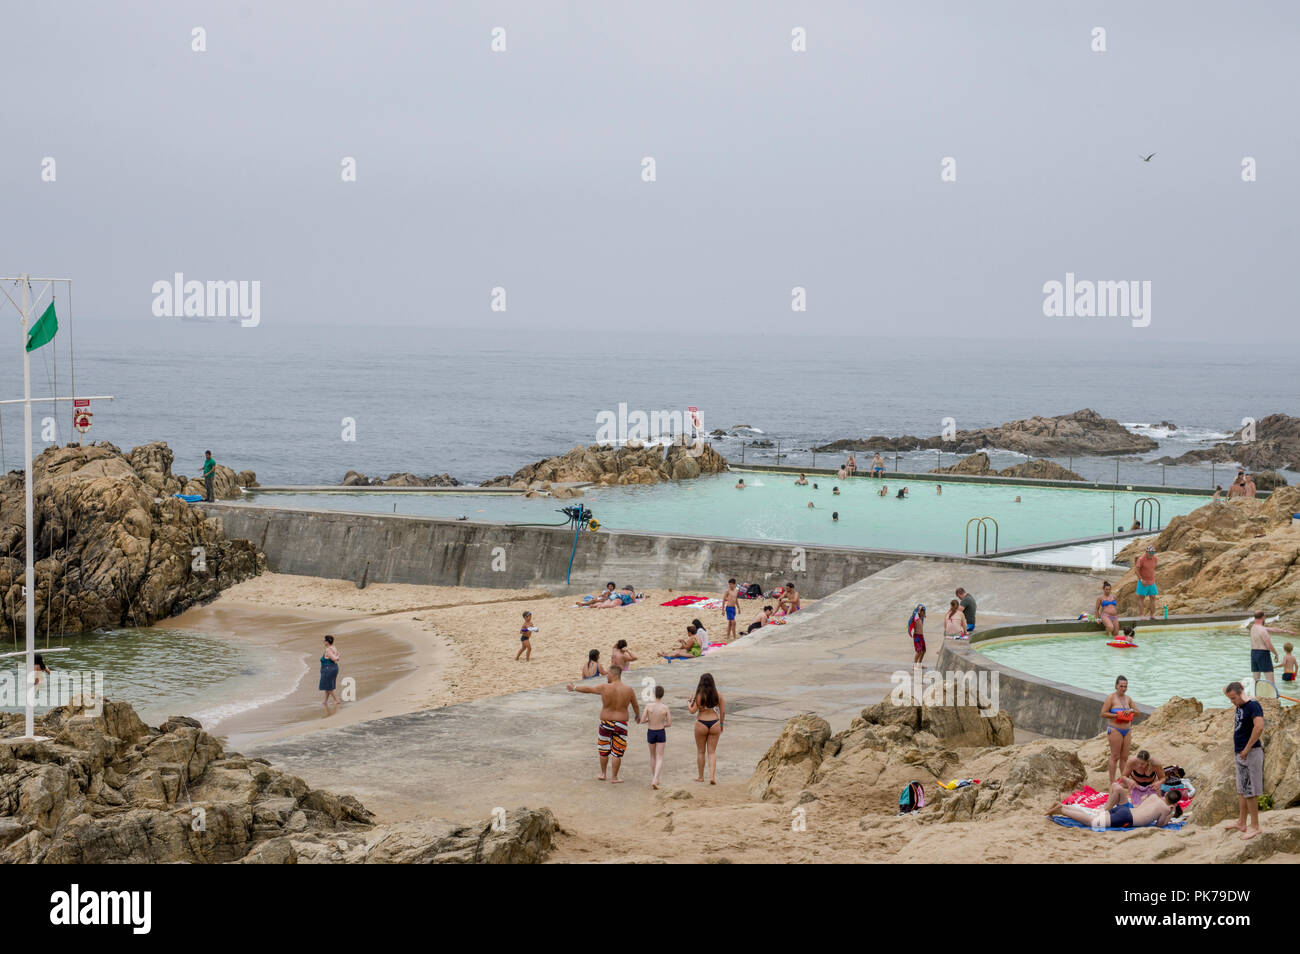 Piscinas das Marés piscinas desarrollado por el arquitecto Alvaro Siza,  Leça da Palmeira, Portugal Fotografía de stock - Alamy